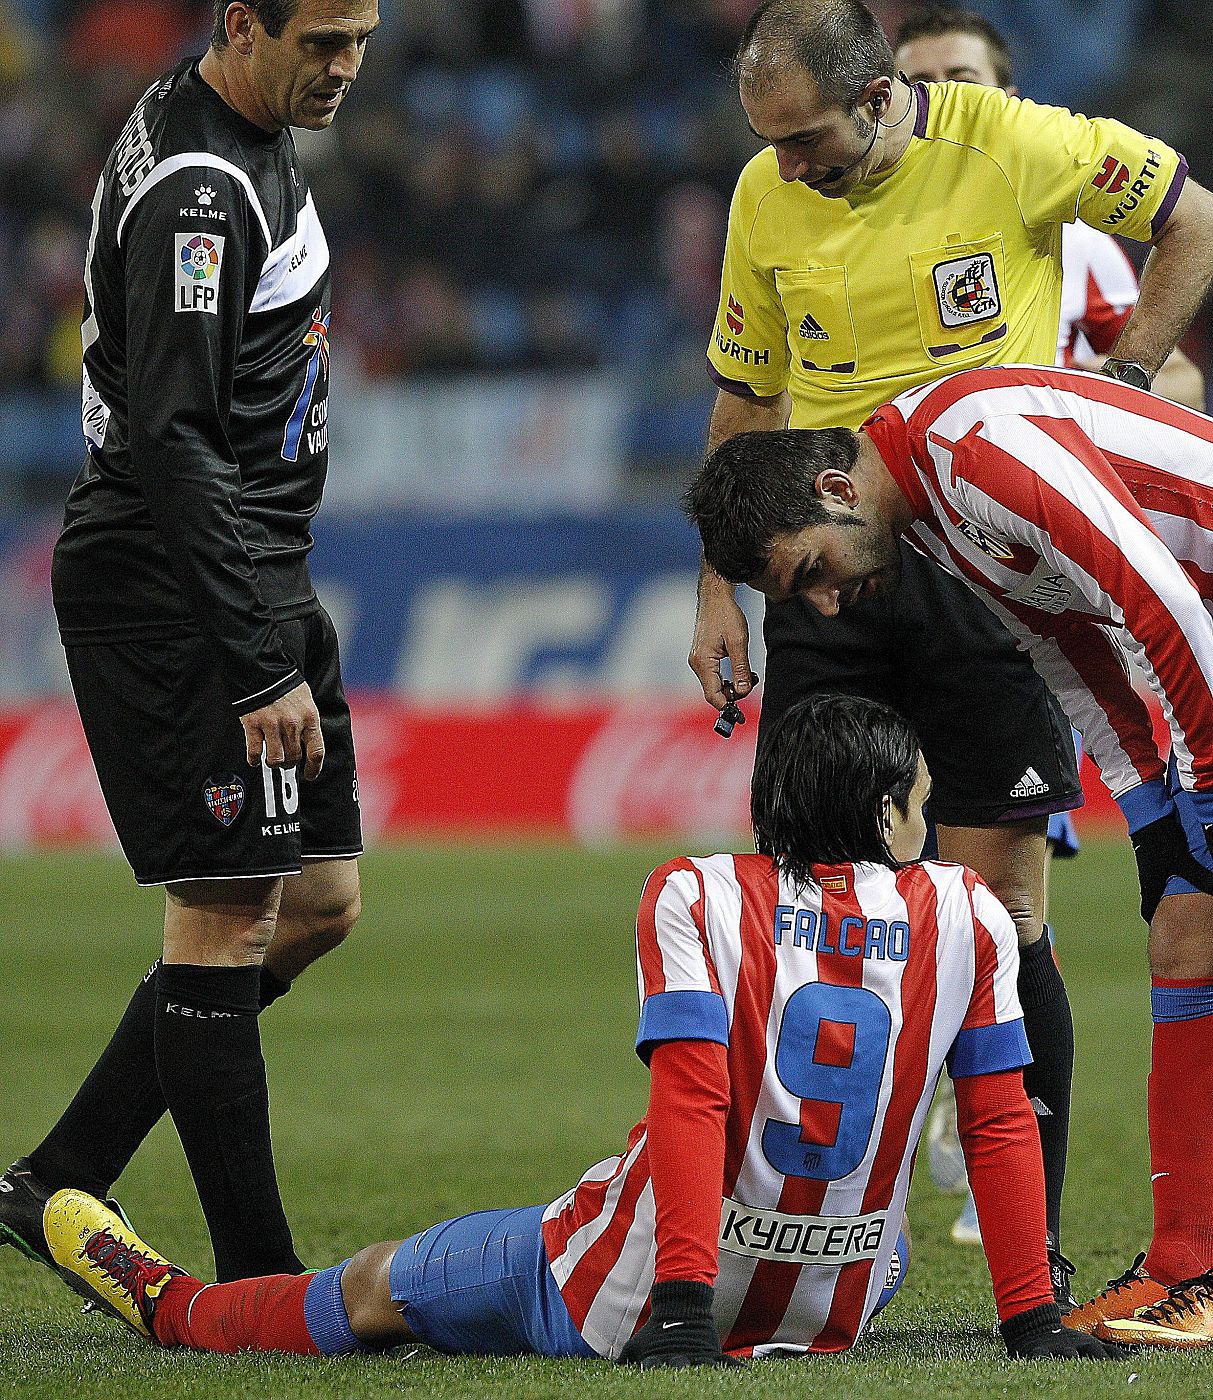 Radamel Falcao, en el suelo, tras lesionarse durante el partido frente al Levante